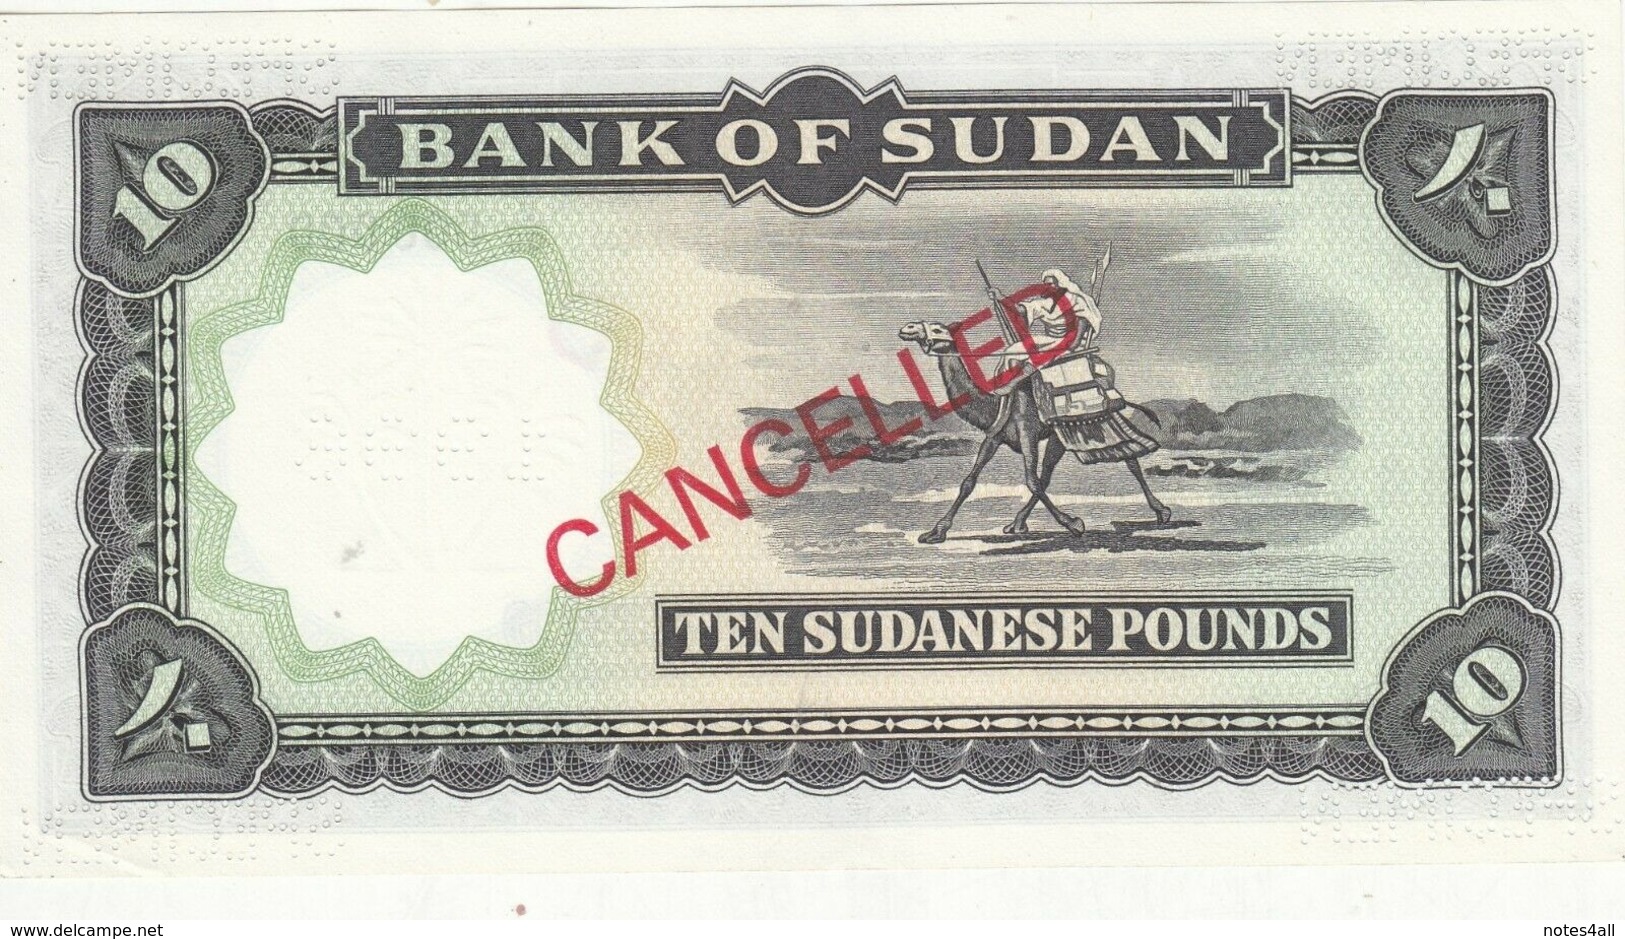 SUDAN 10 POUNDS 1968 P-10d SPECIMEN UNC */* - Sudan